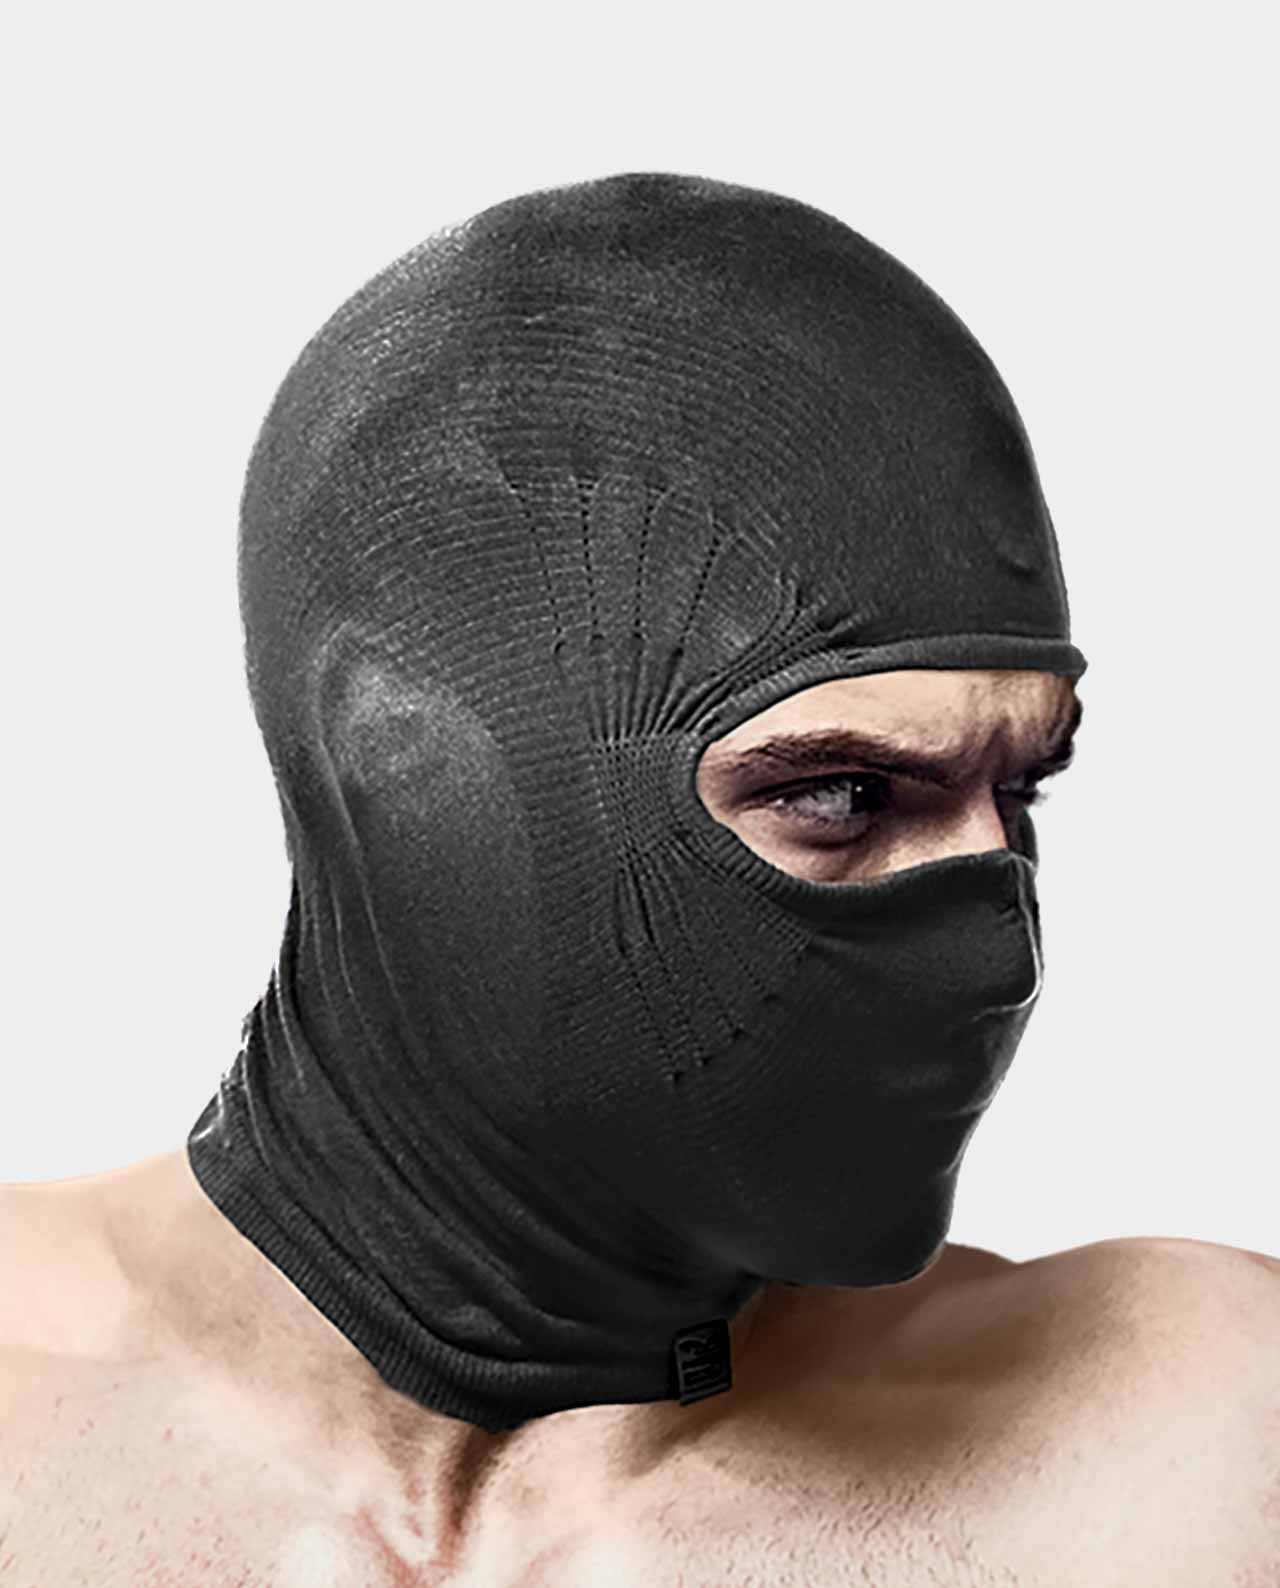 Black Full Face Mask 